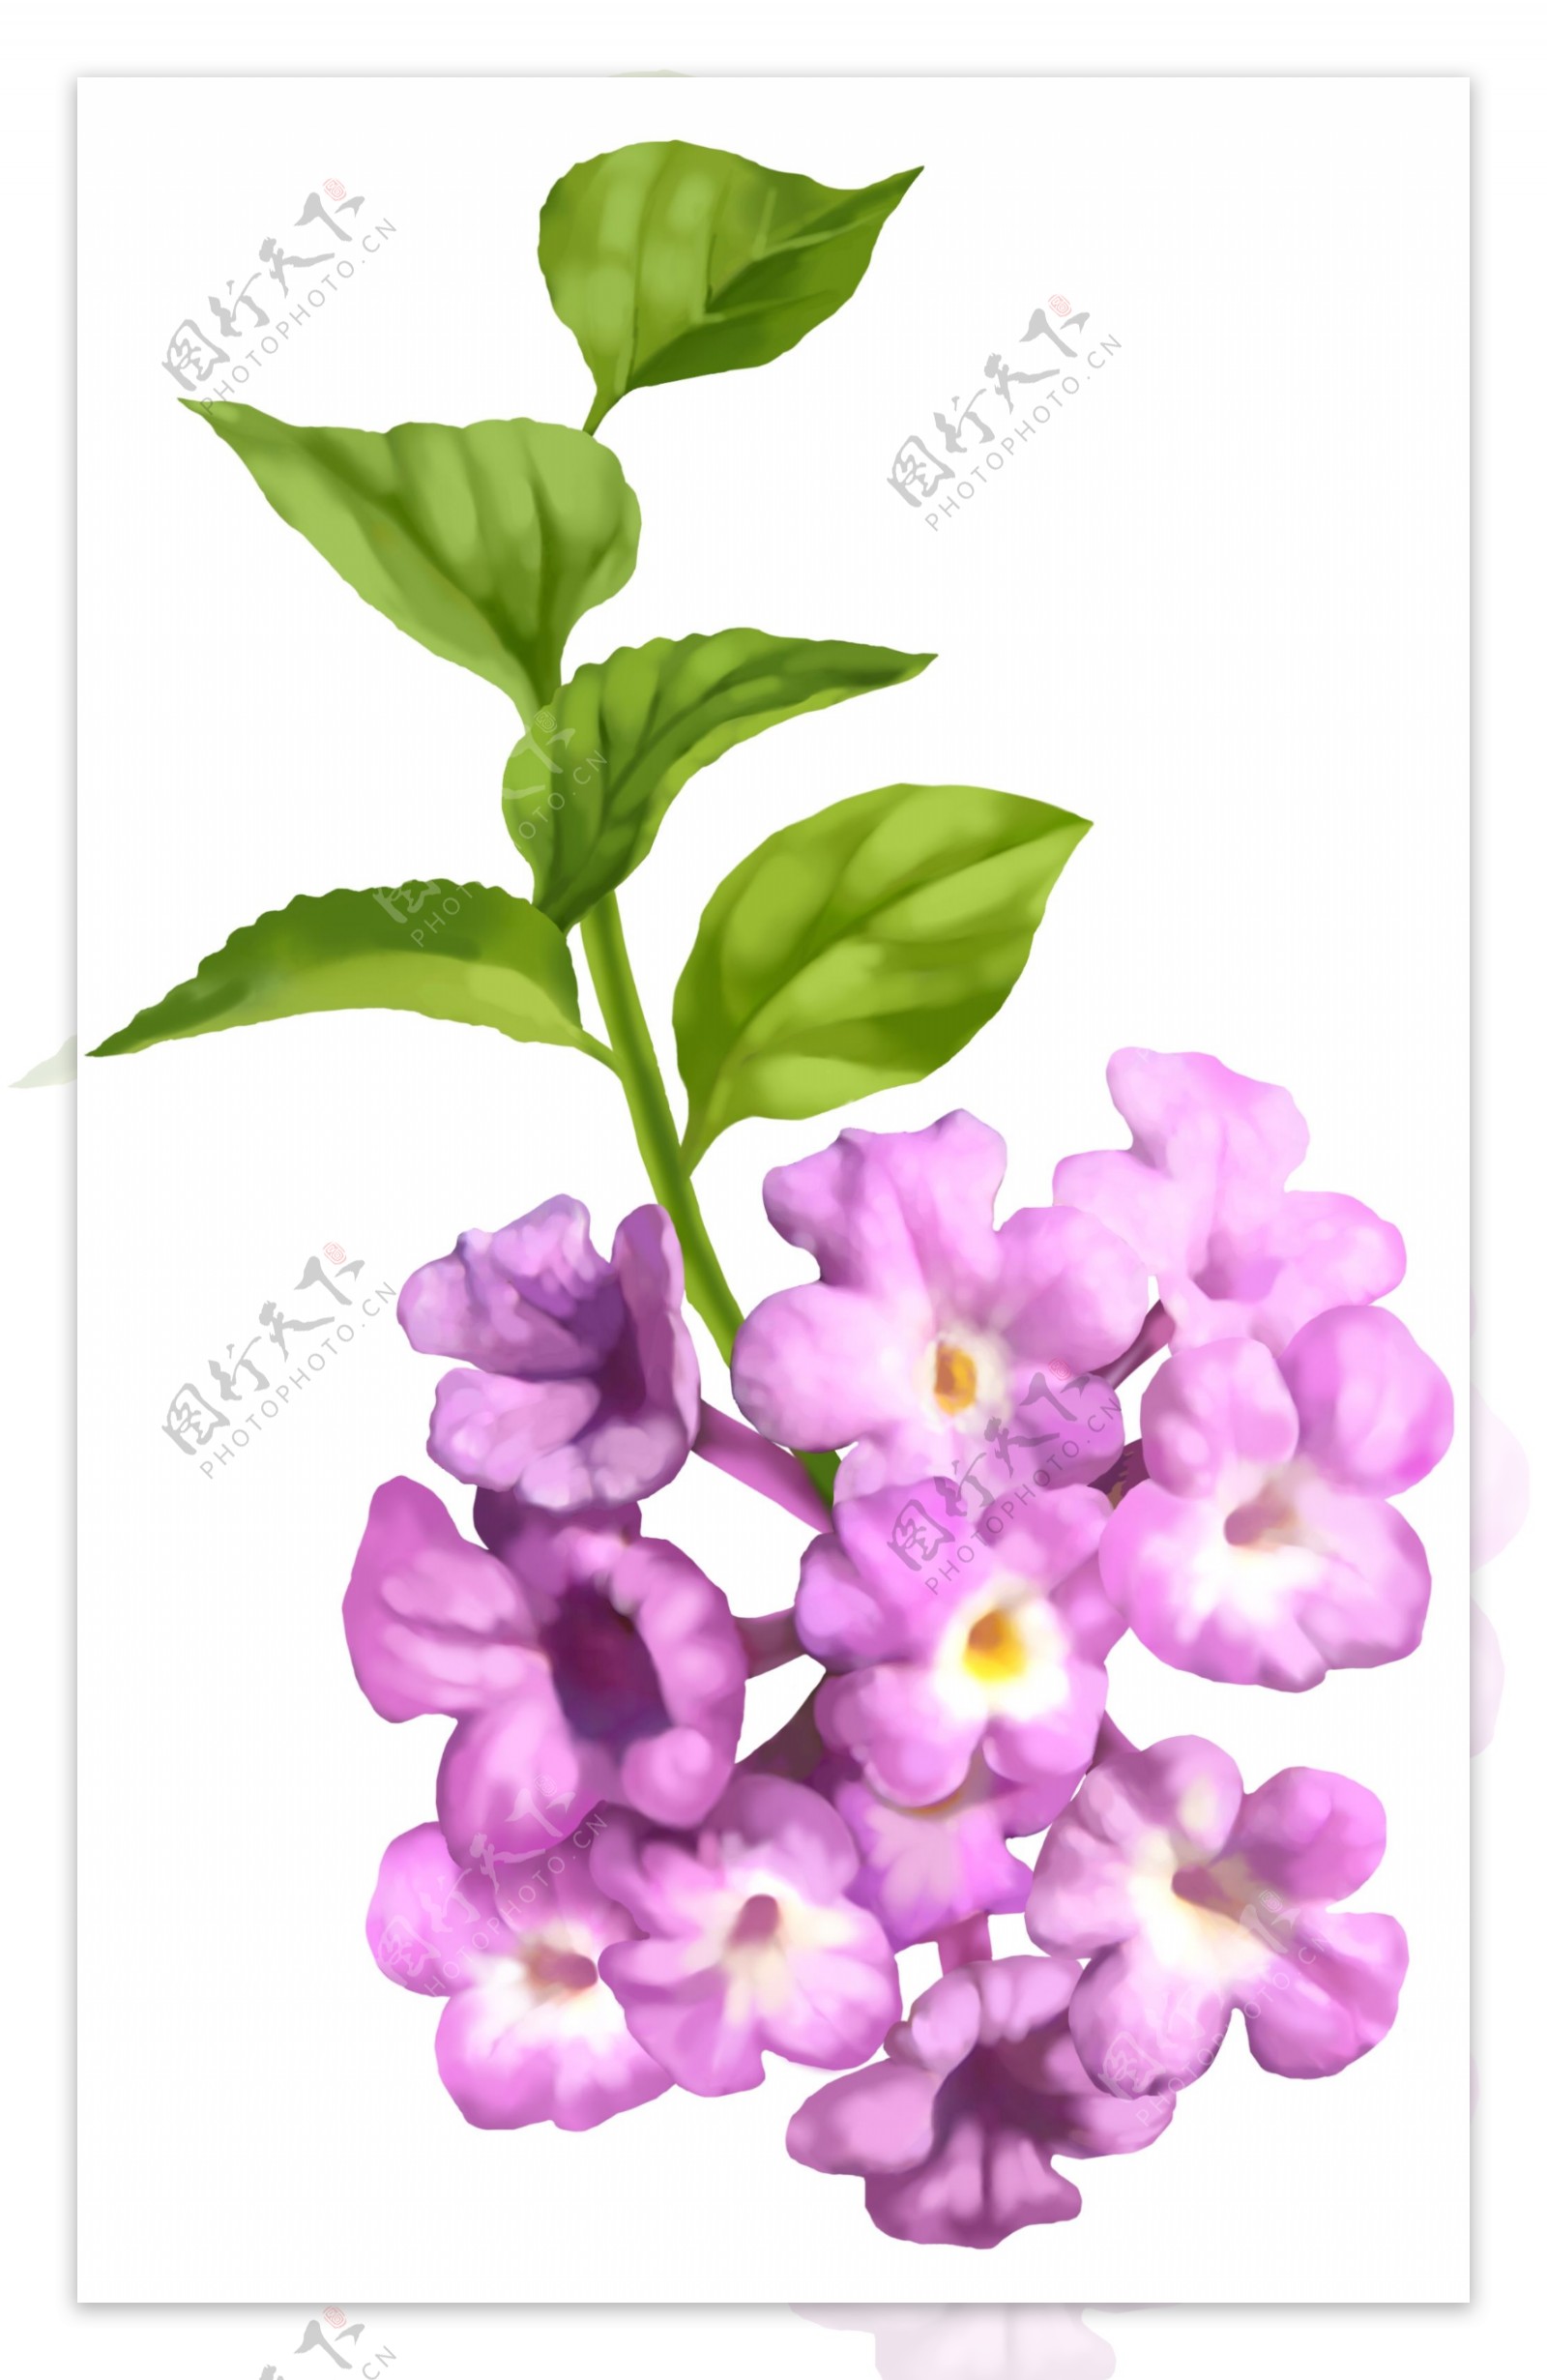 紫色小花朵26